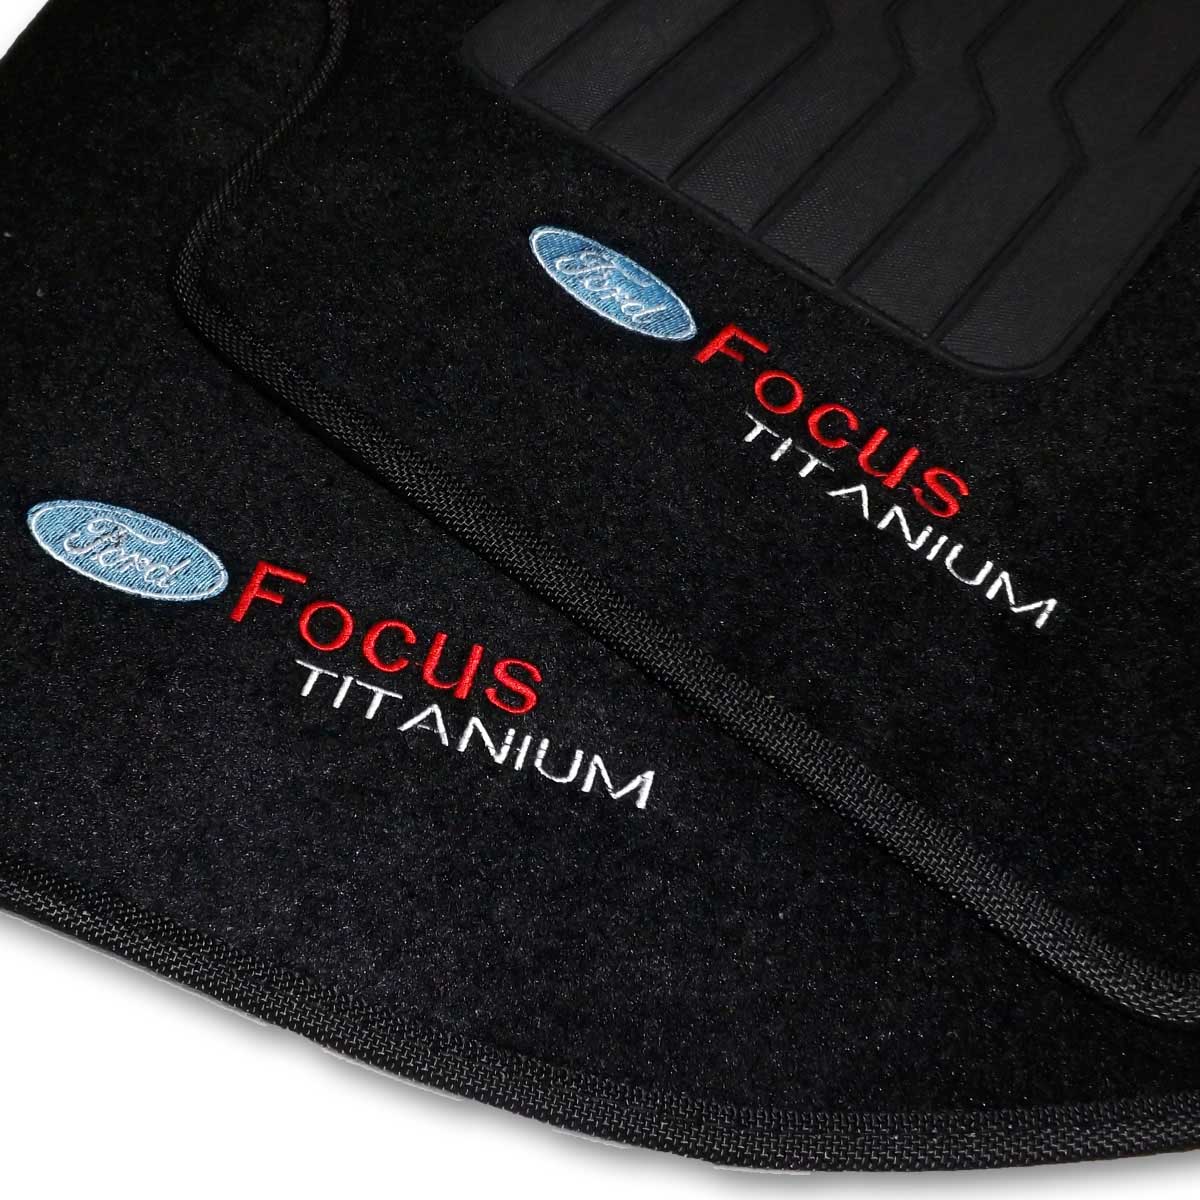 Tapete Carpete Personalizado Logo Bordada Ford Focus Titanium 2011 até 2013